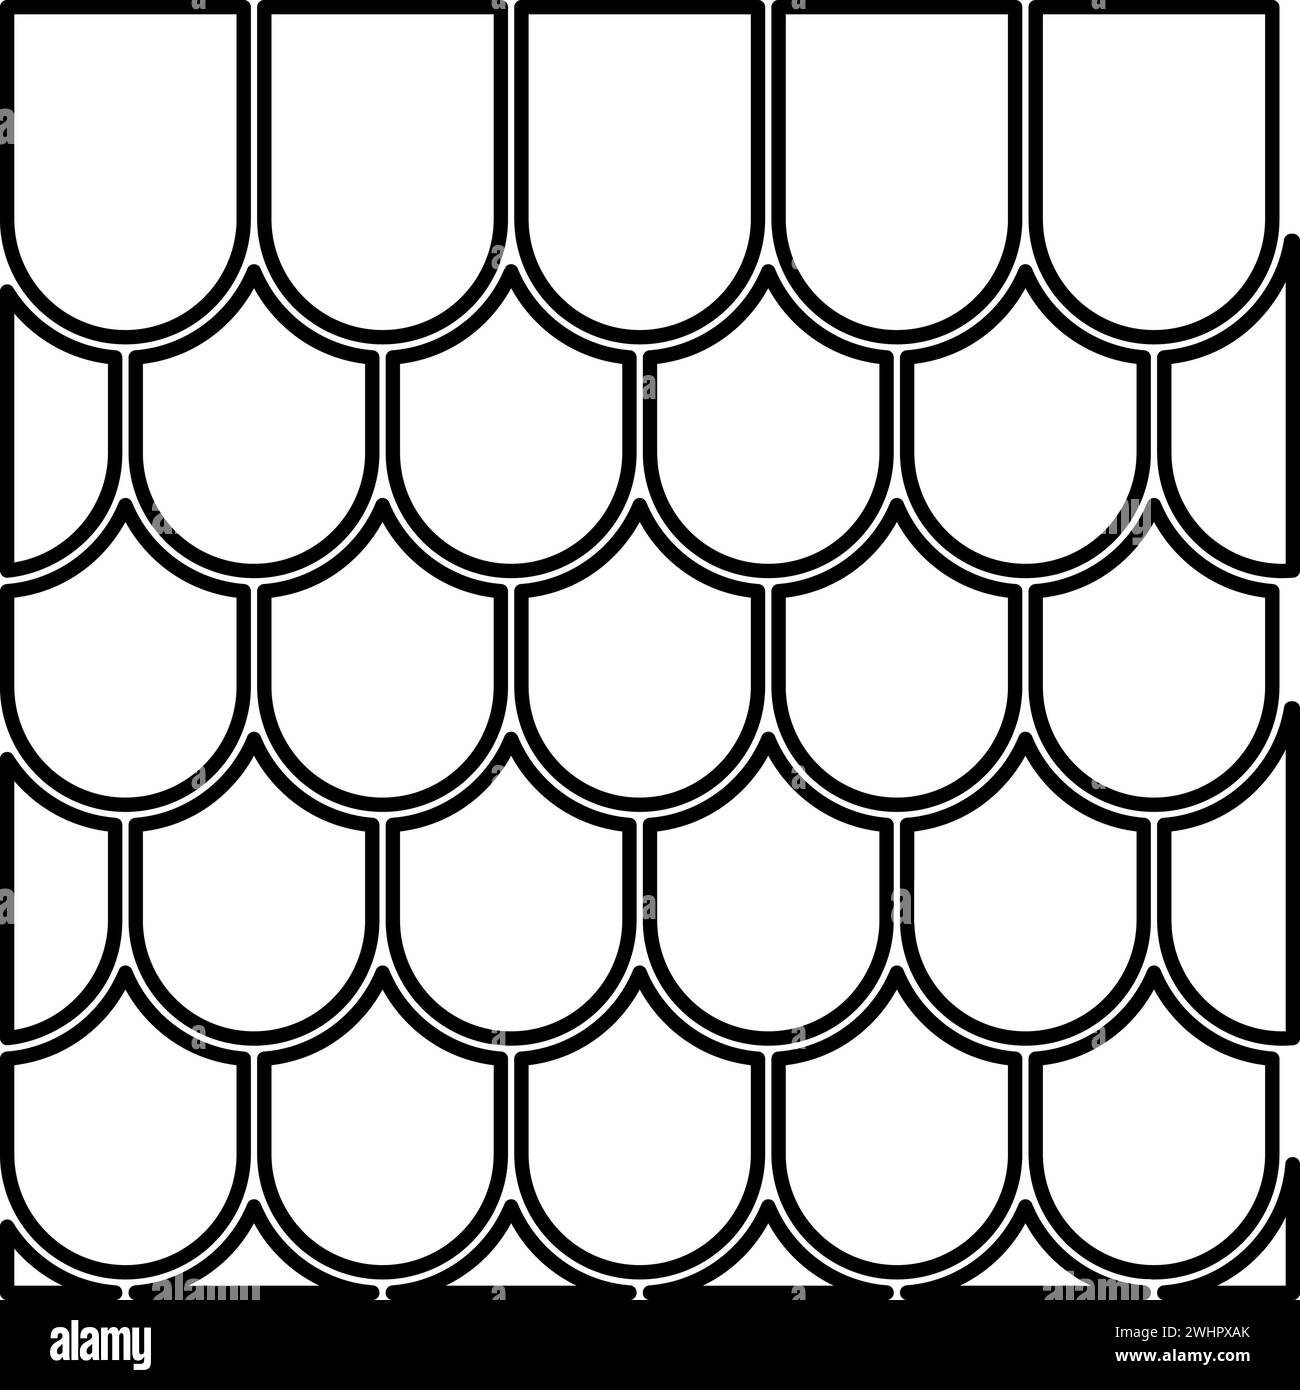 Dachkeramik Fliesen Wellpappe Dachhaus Material Schieferkontur Umrisslinie Symbol schwarze Farbe Vektor Illustration Bild dünn flach Stil einfach Stock Vektor